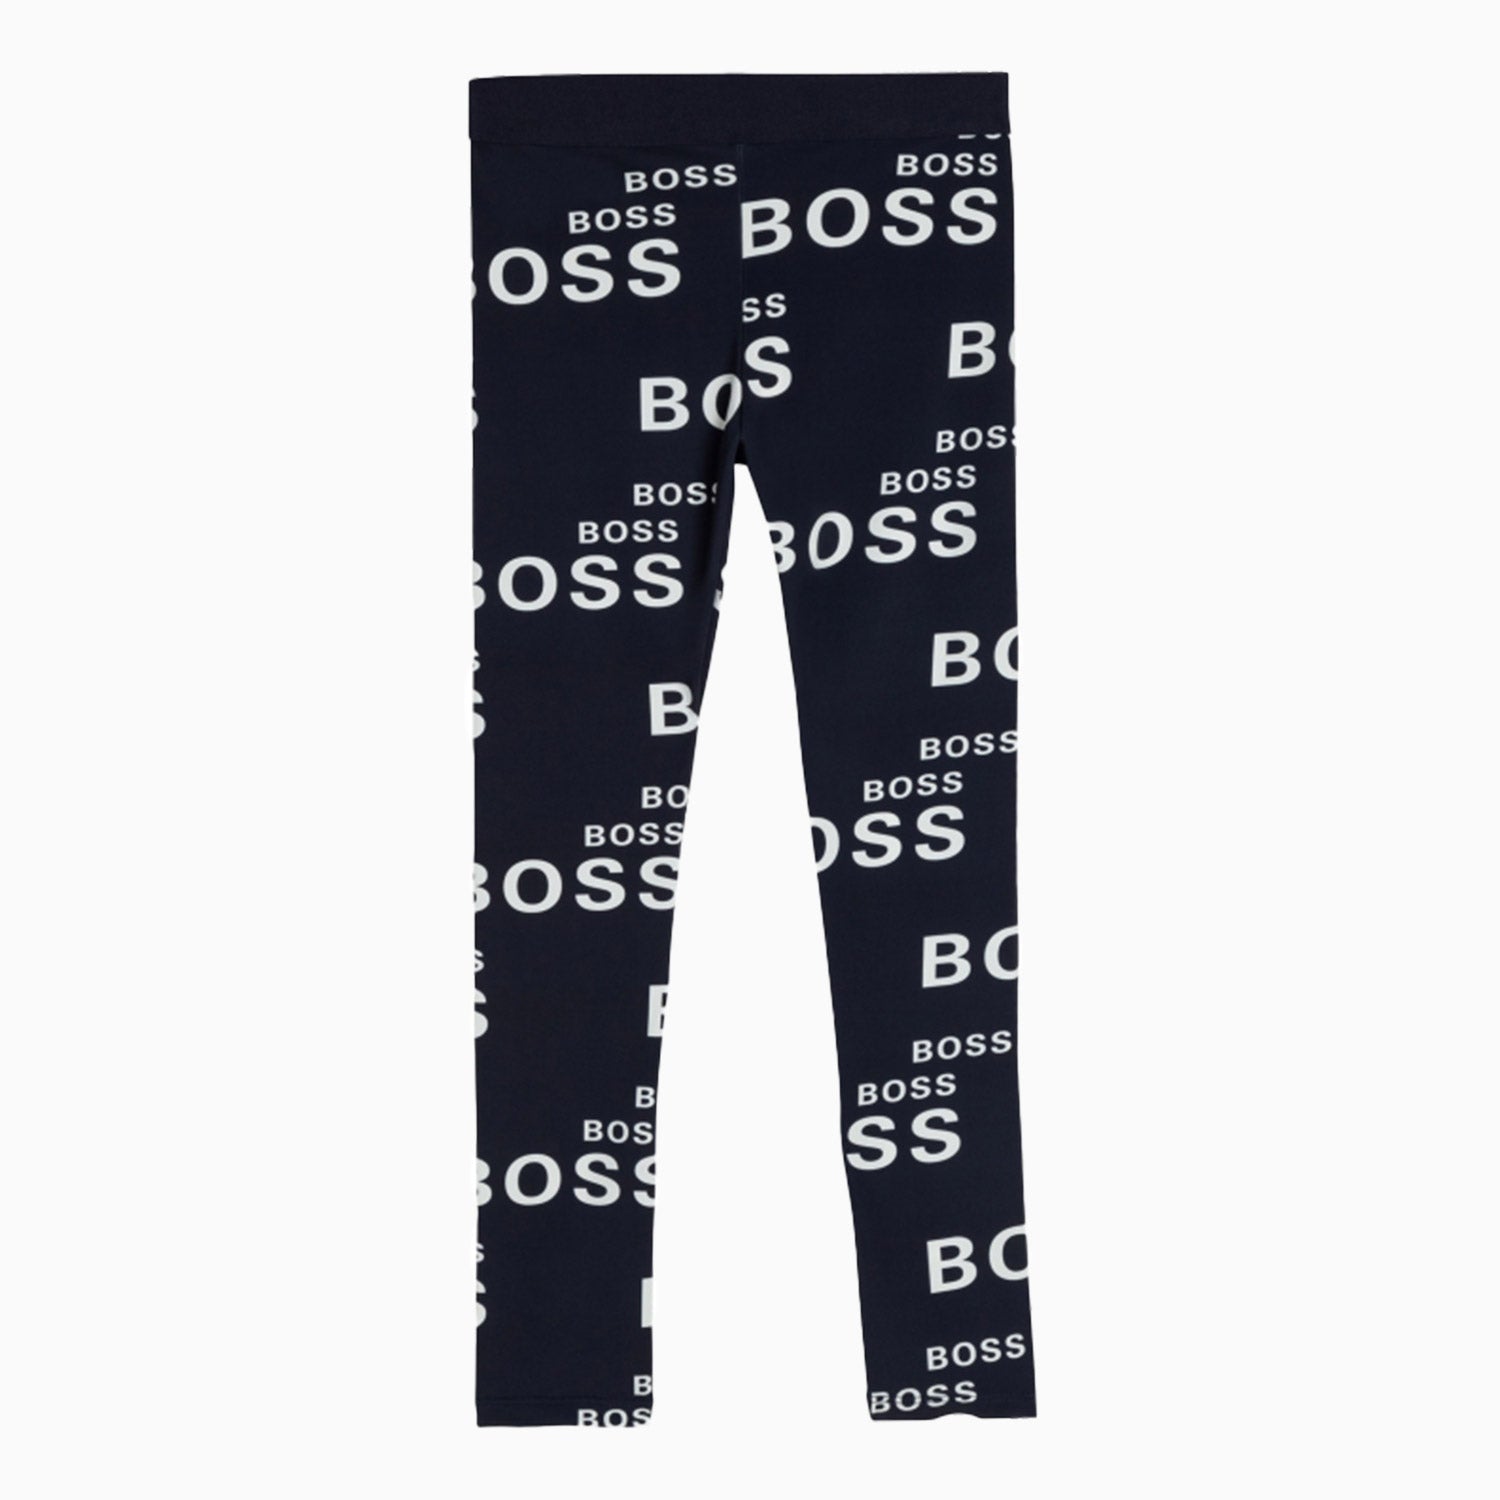 hugo-boss-kids-mini-logo-print-outfit-j15435-857-j14226-857